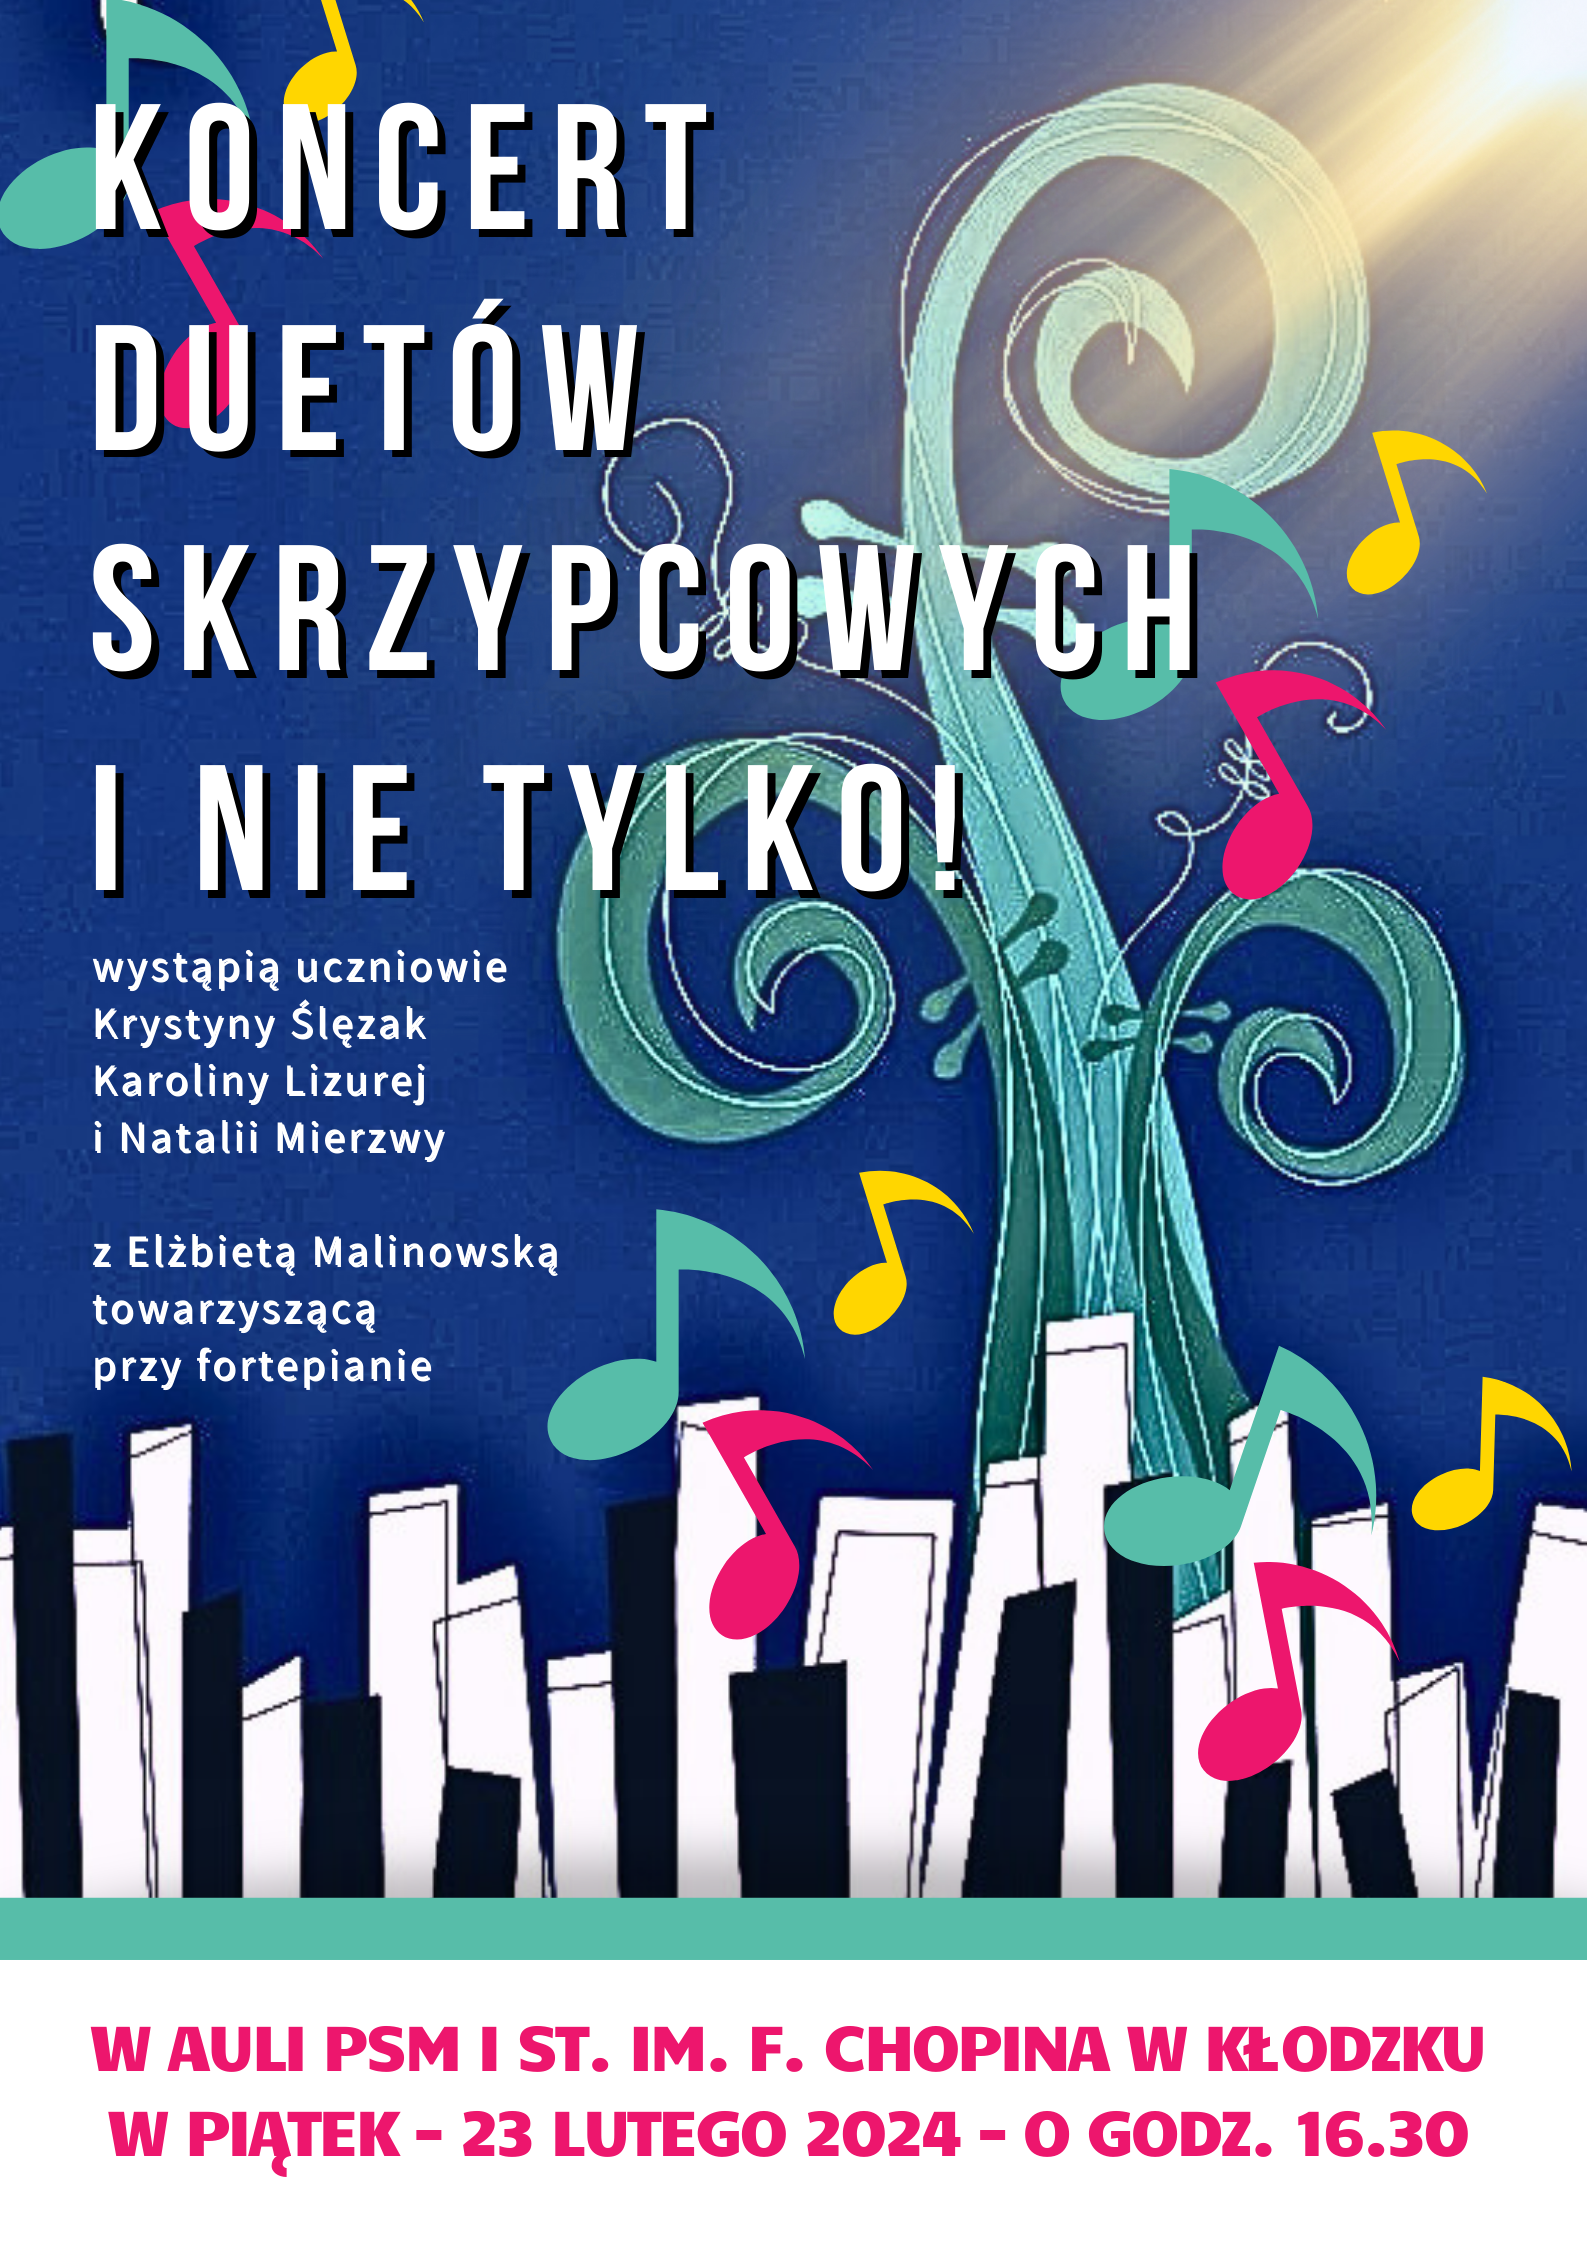 Plakat na kolorowym tle z szczegółową informacją tekstową dotyczącą koncertu duetów skrzypcowych, który odbędzie się 23 lutego 2024 r. w auli PSM w Kłodzku